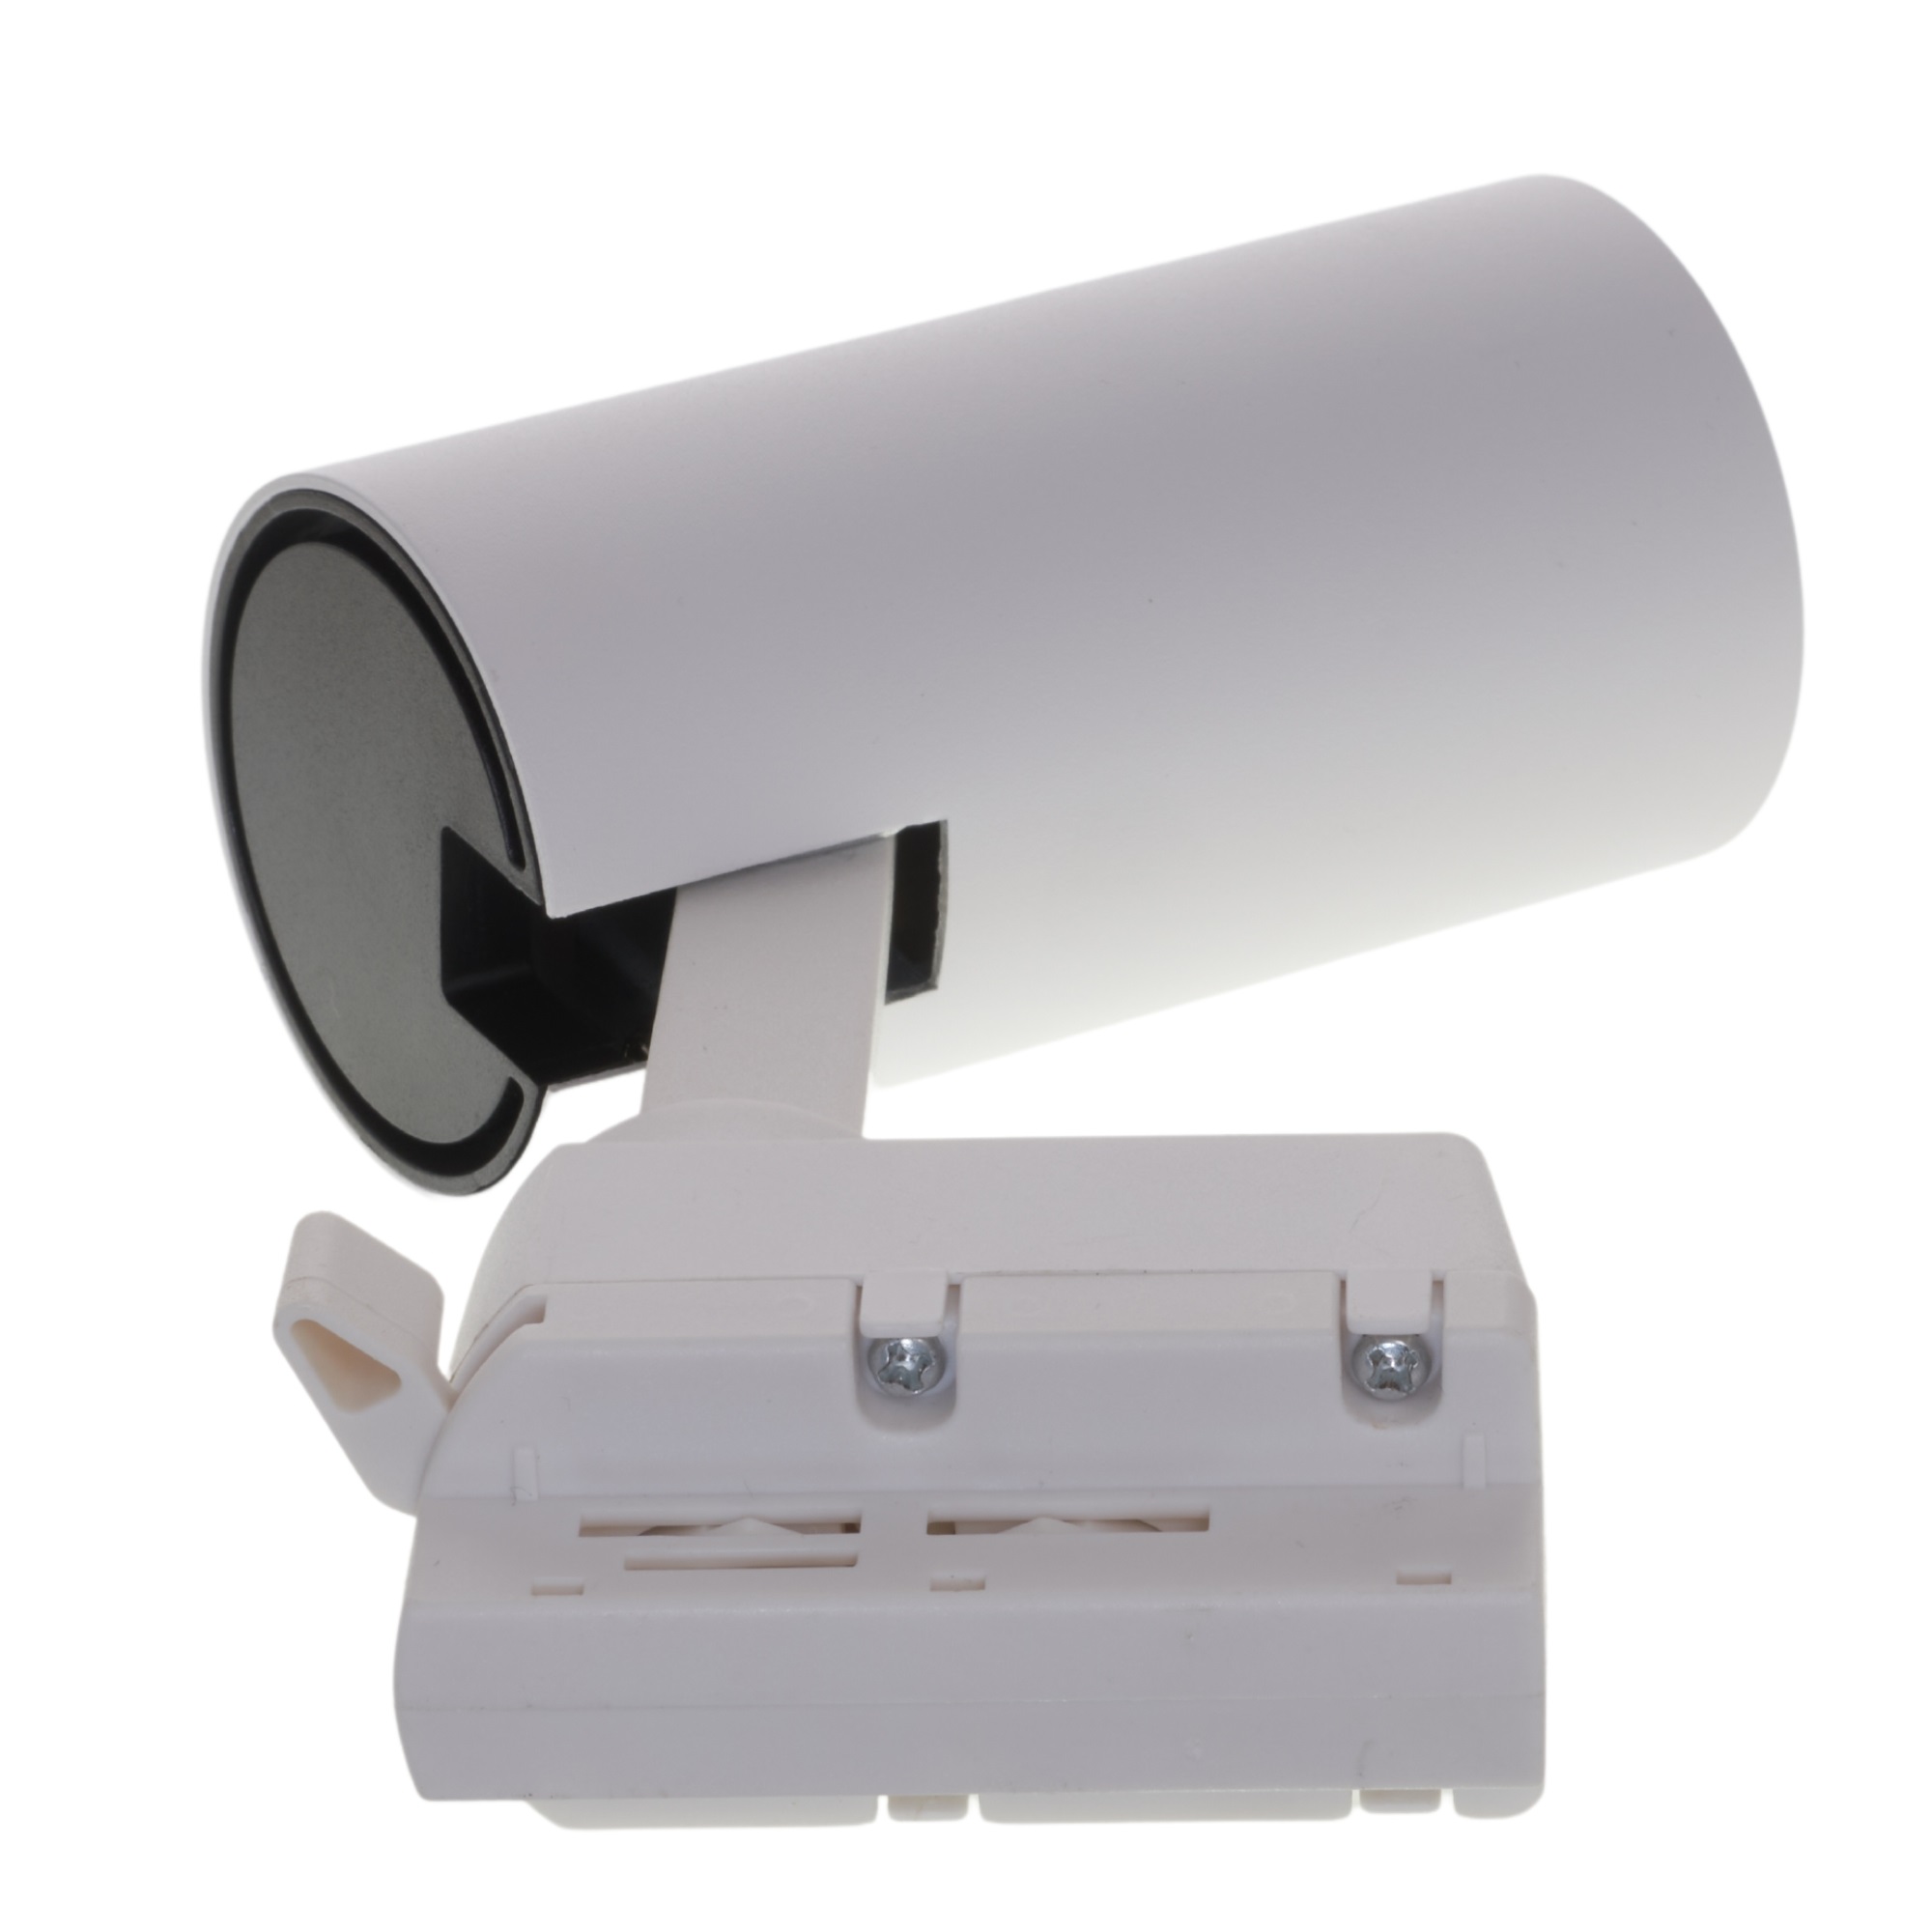 ULB-Q277 10W-4000К WHITE Светильник-прожектор светодиодный трековый. 800 Лм. Белый свет 4000К. Корпус белый. ТМ Volpe